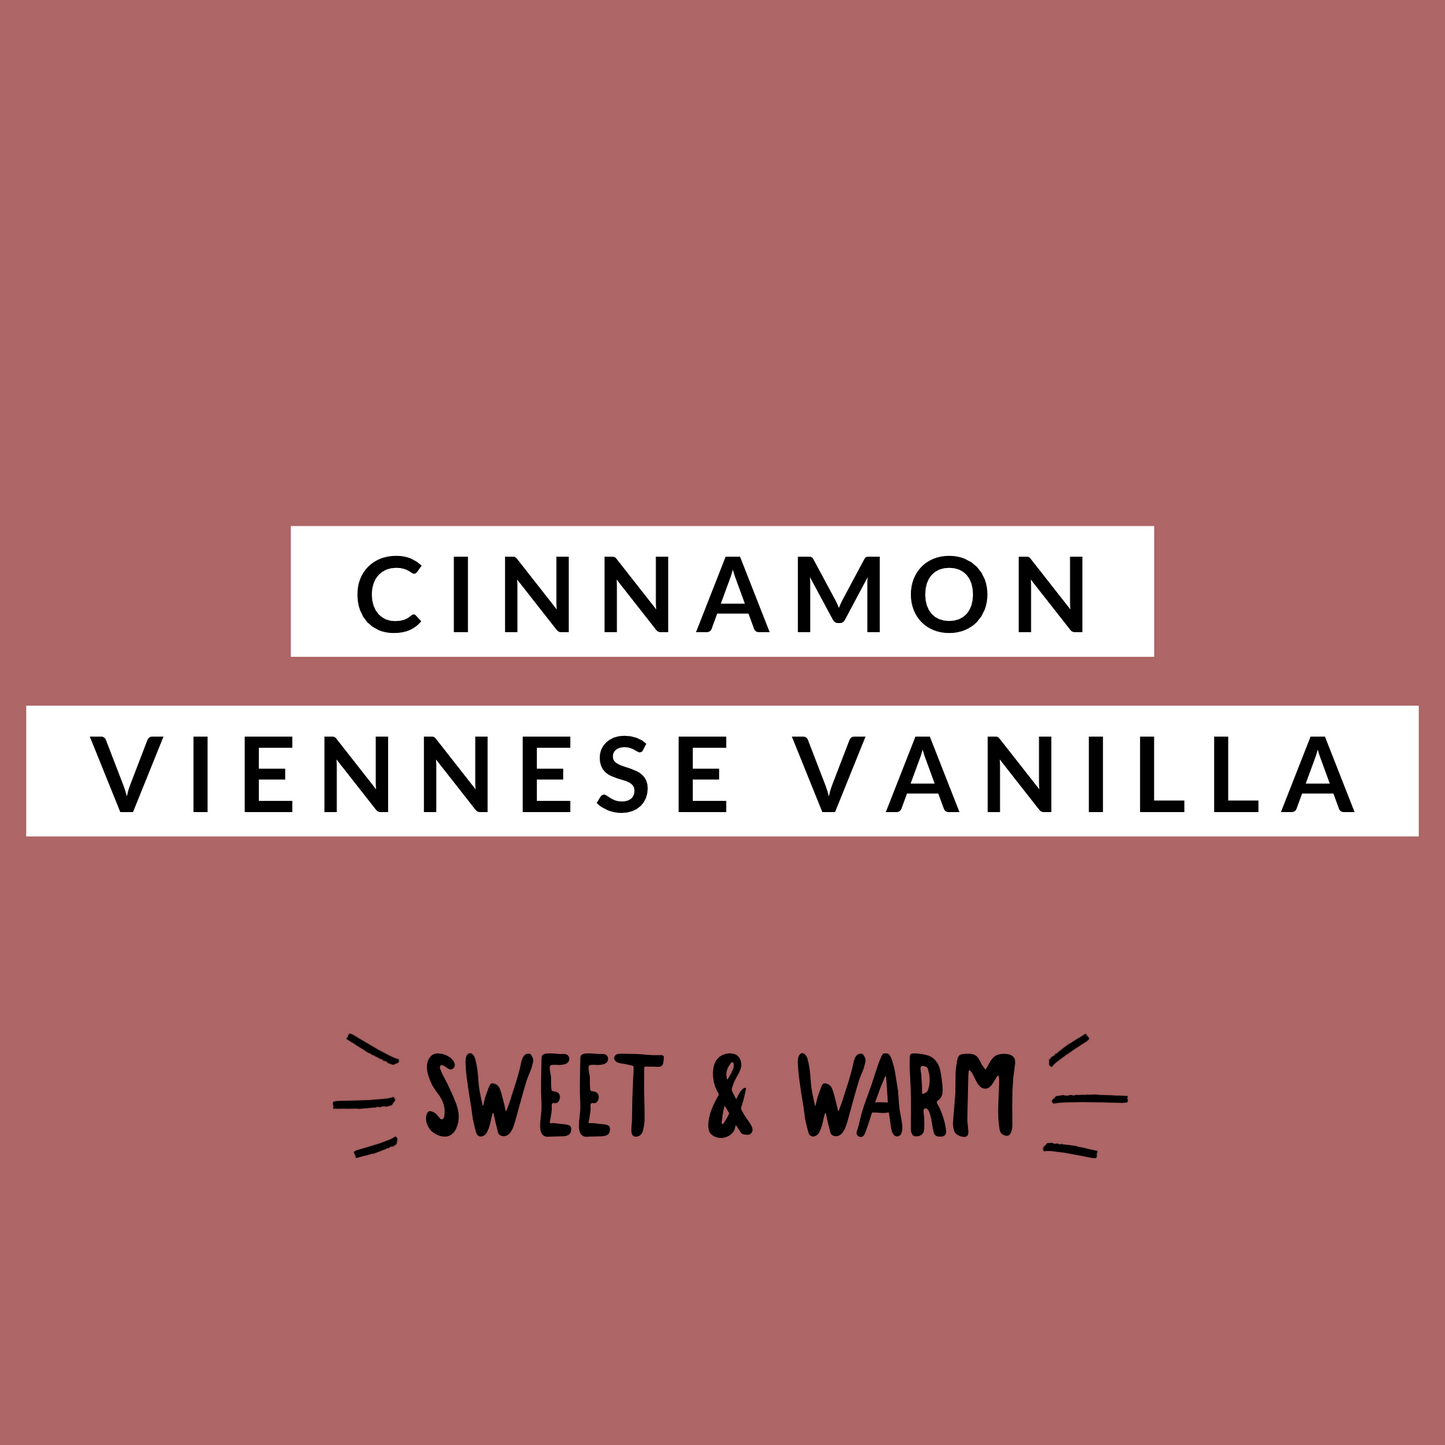 Cinnamon Viennese Vanilla